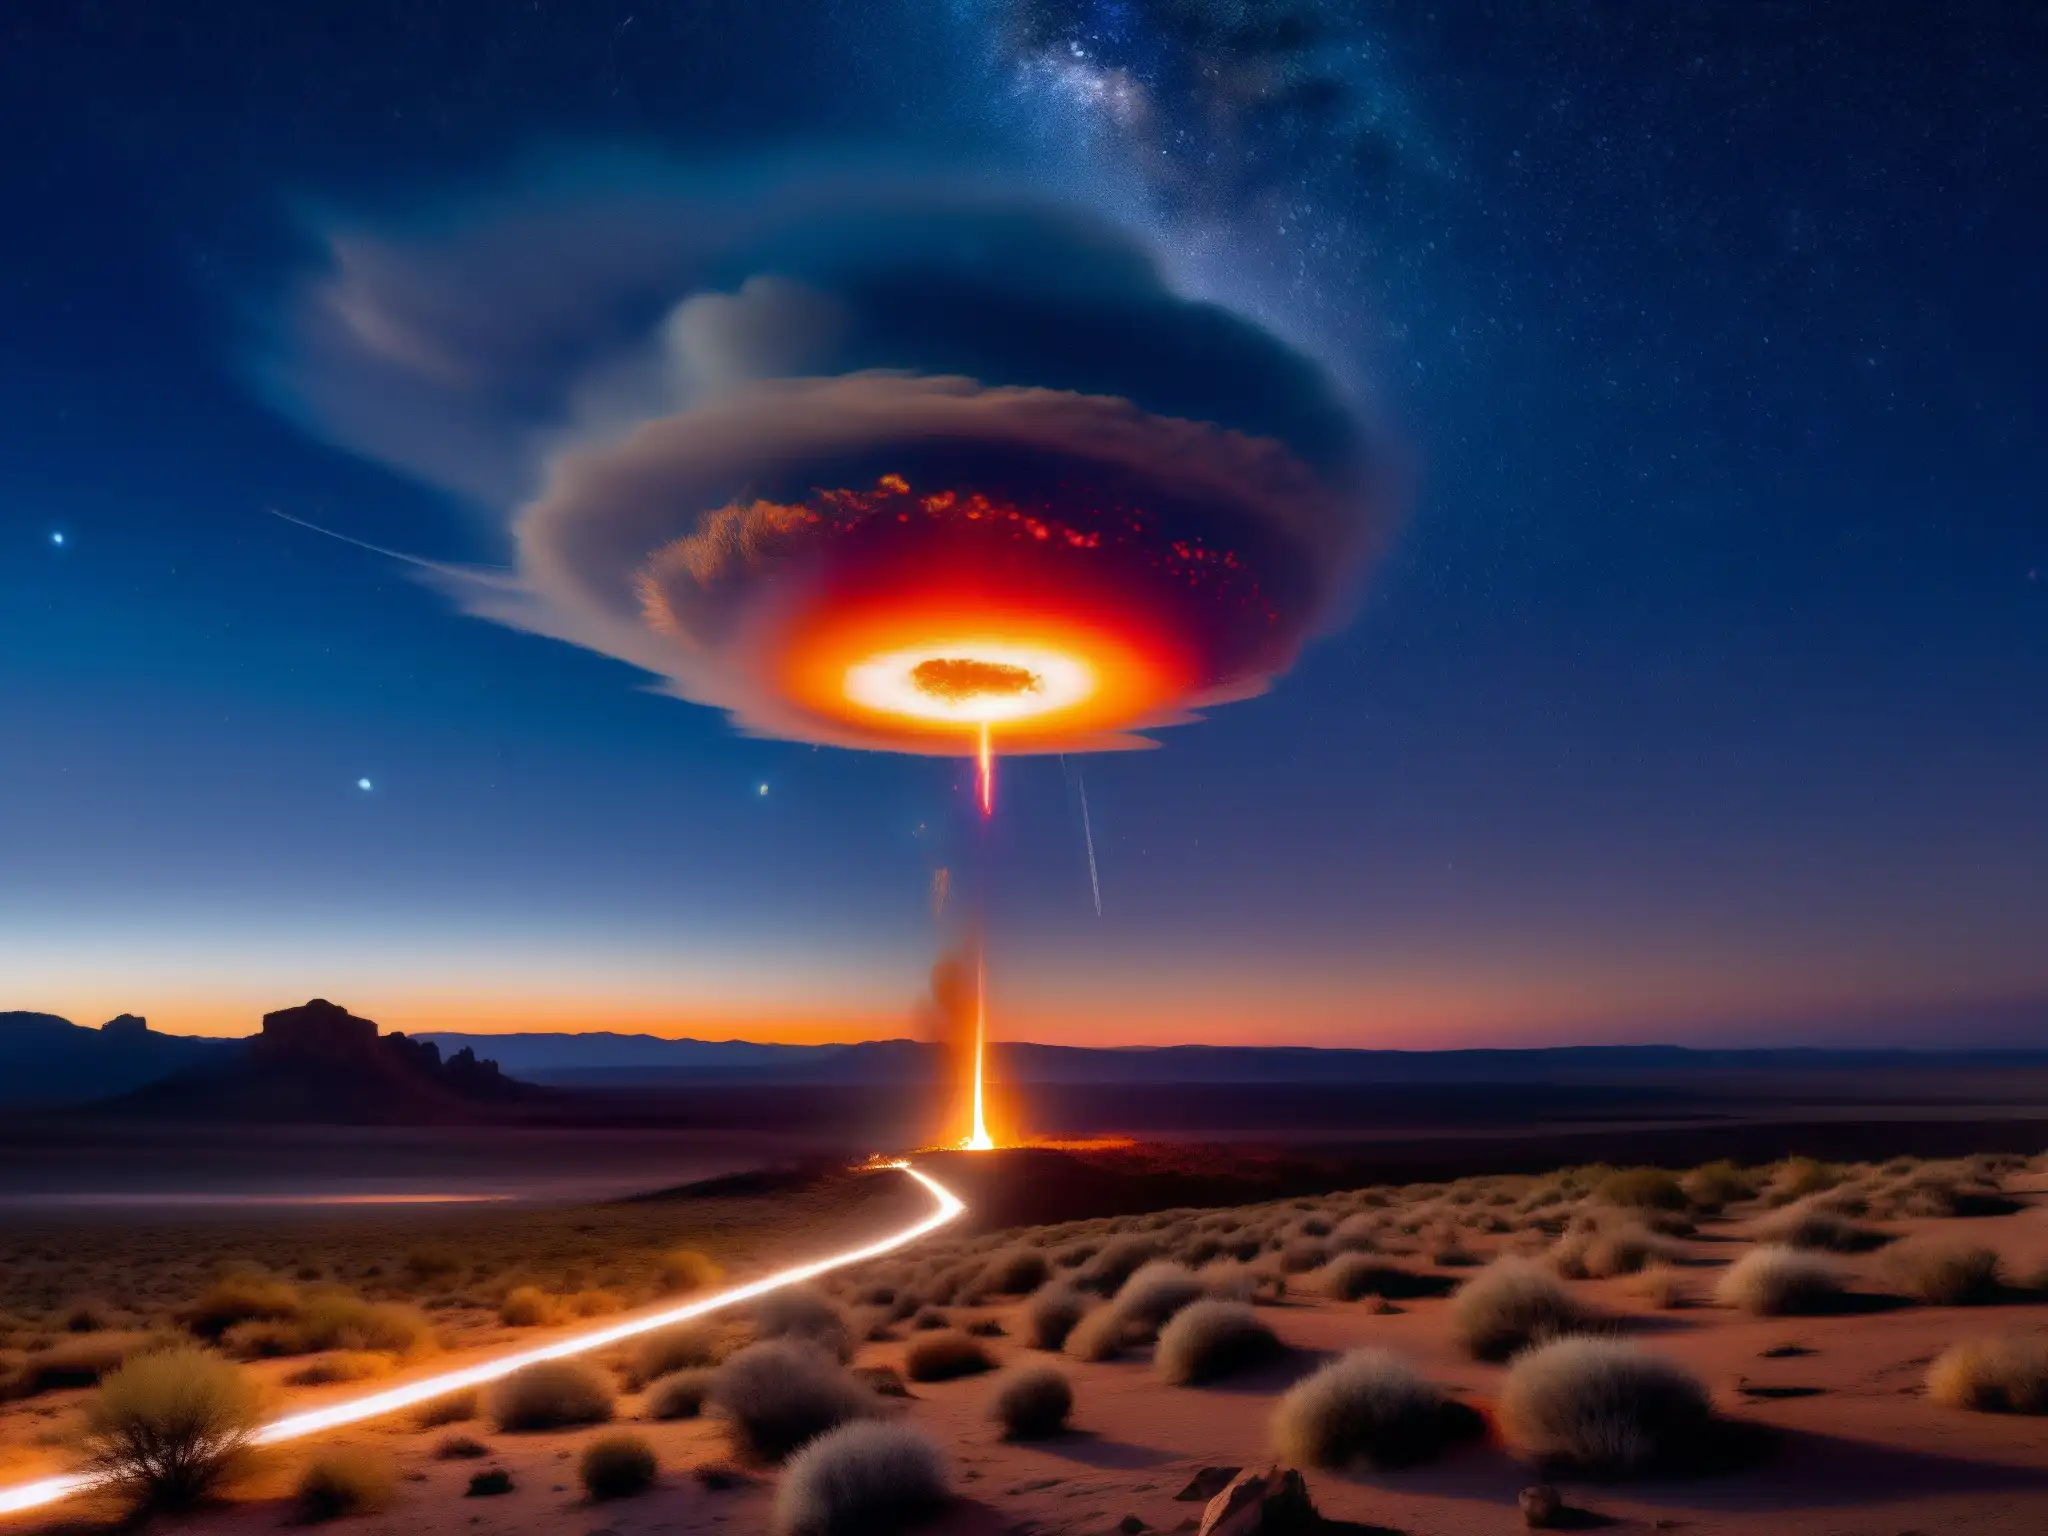 Una impactante bola de fuego cruza el cielo nocturno del desierto, creando un espectáculo paranormal y misterioso